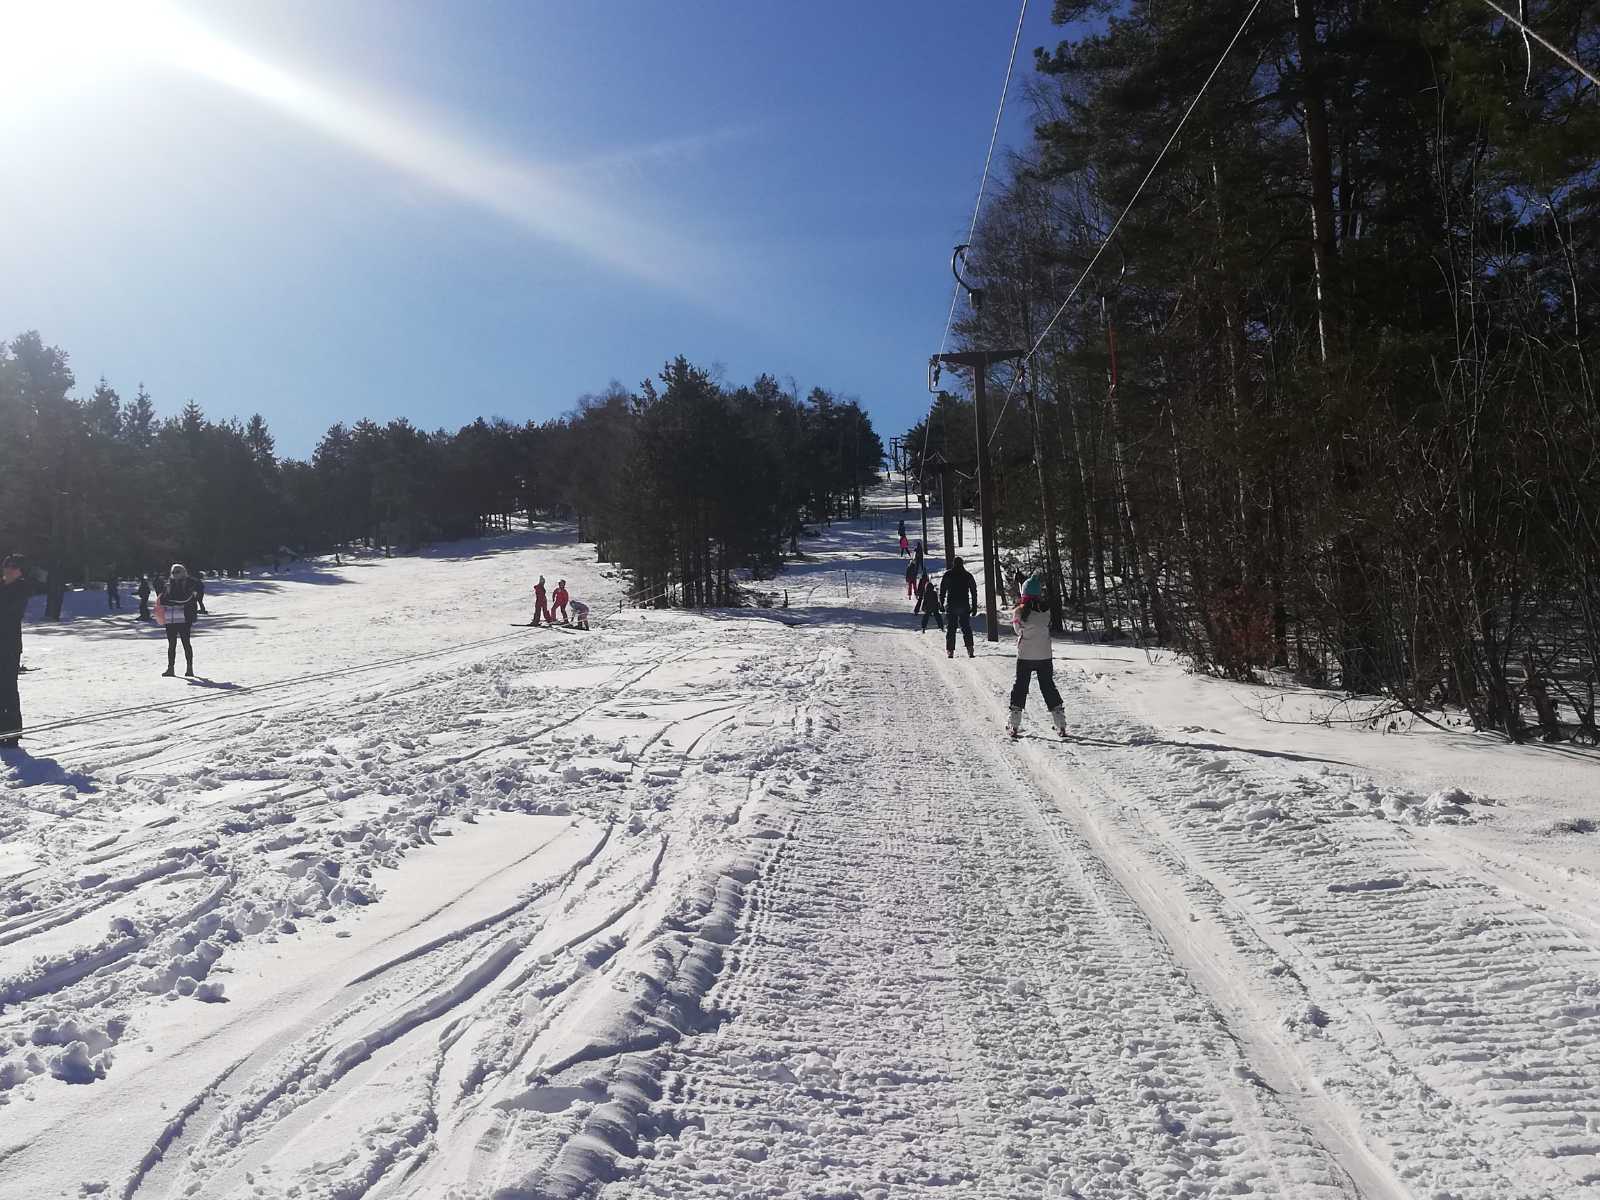 U nedelju sunčano i skijanje na celoj stazi